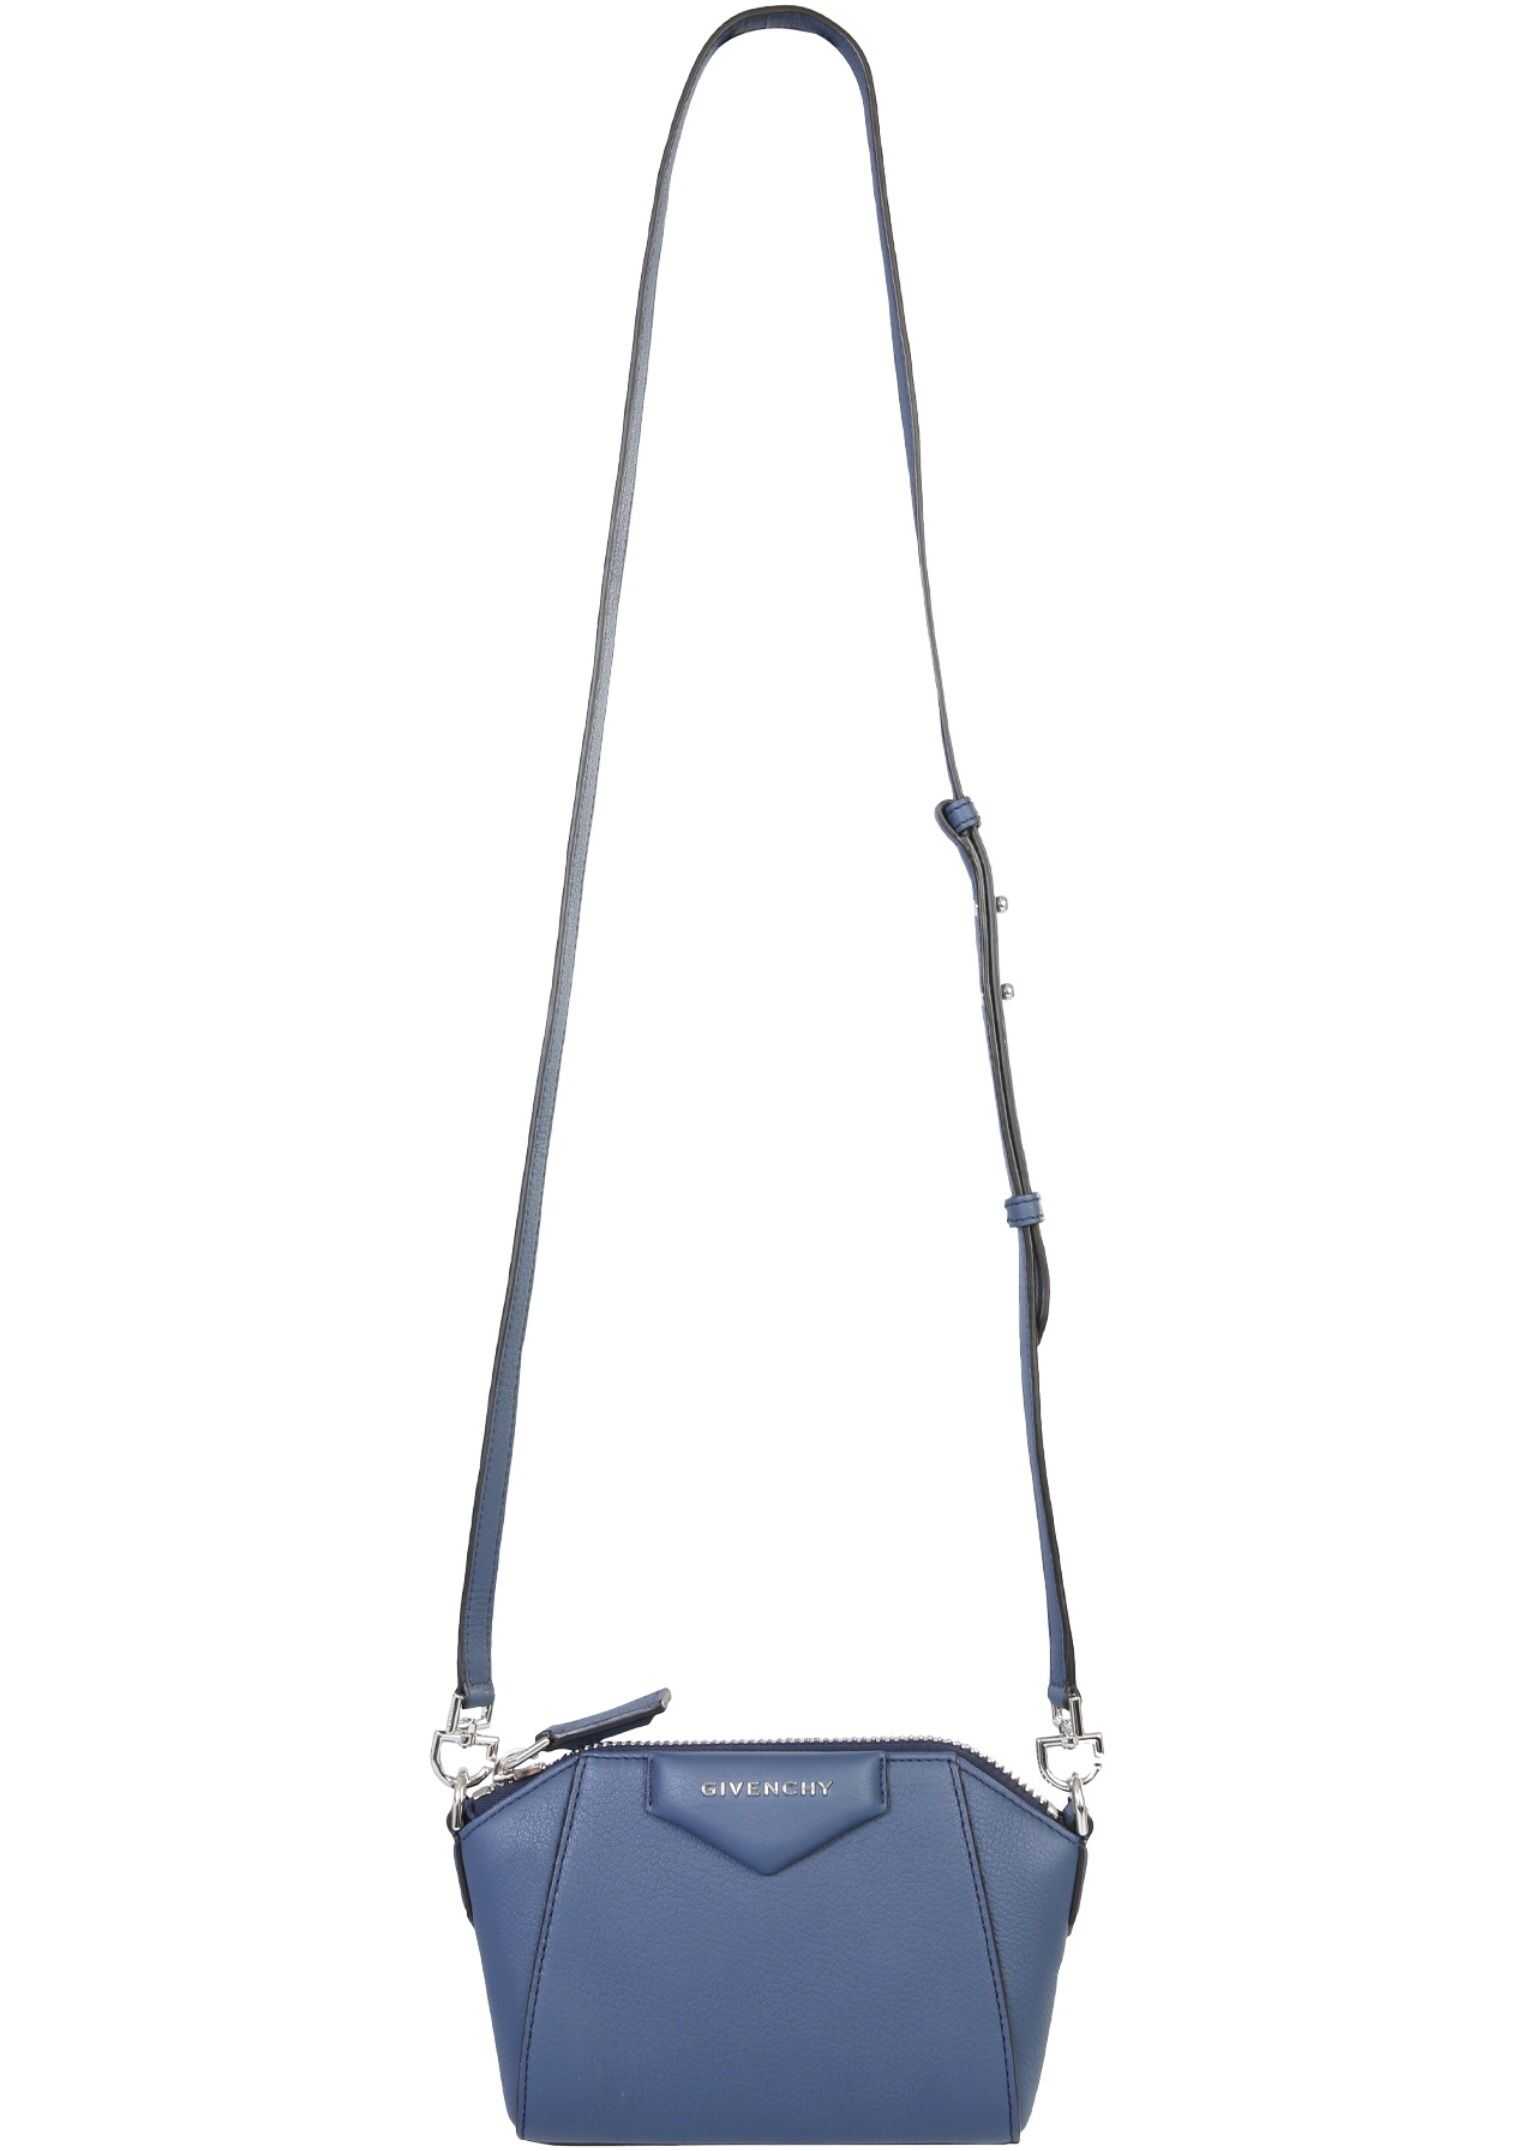 Givenchy Antigona Bag BLUE